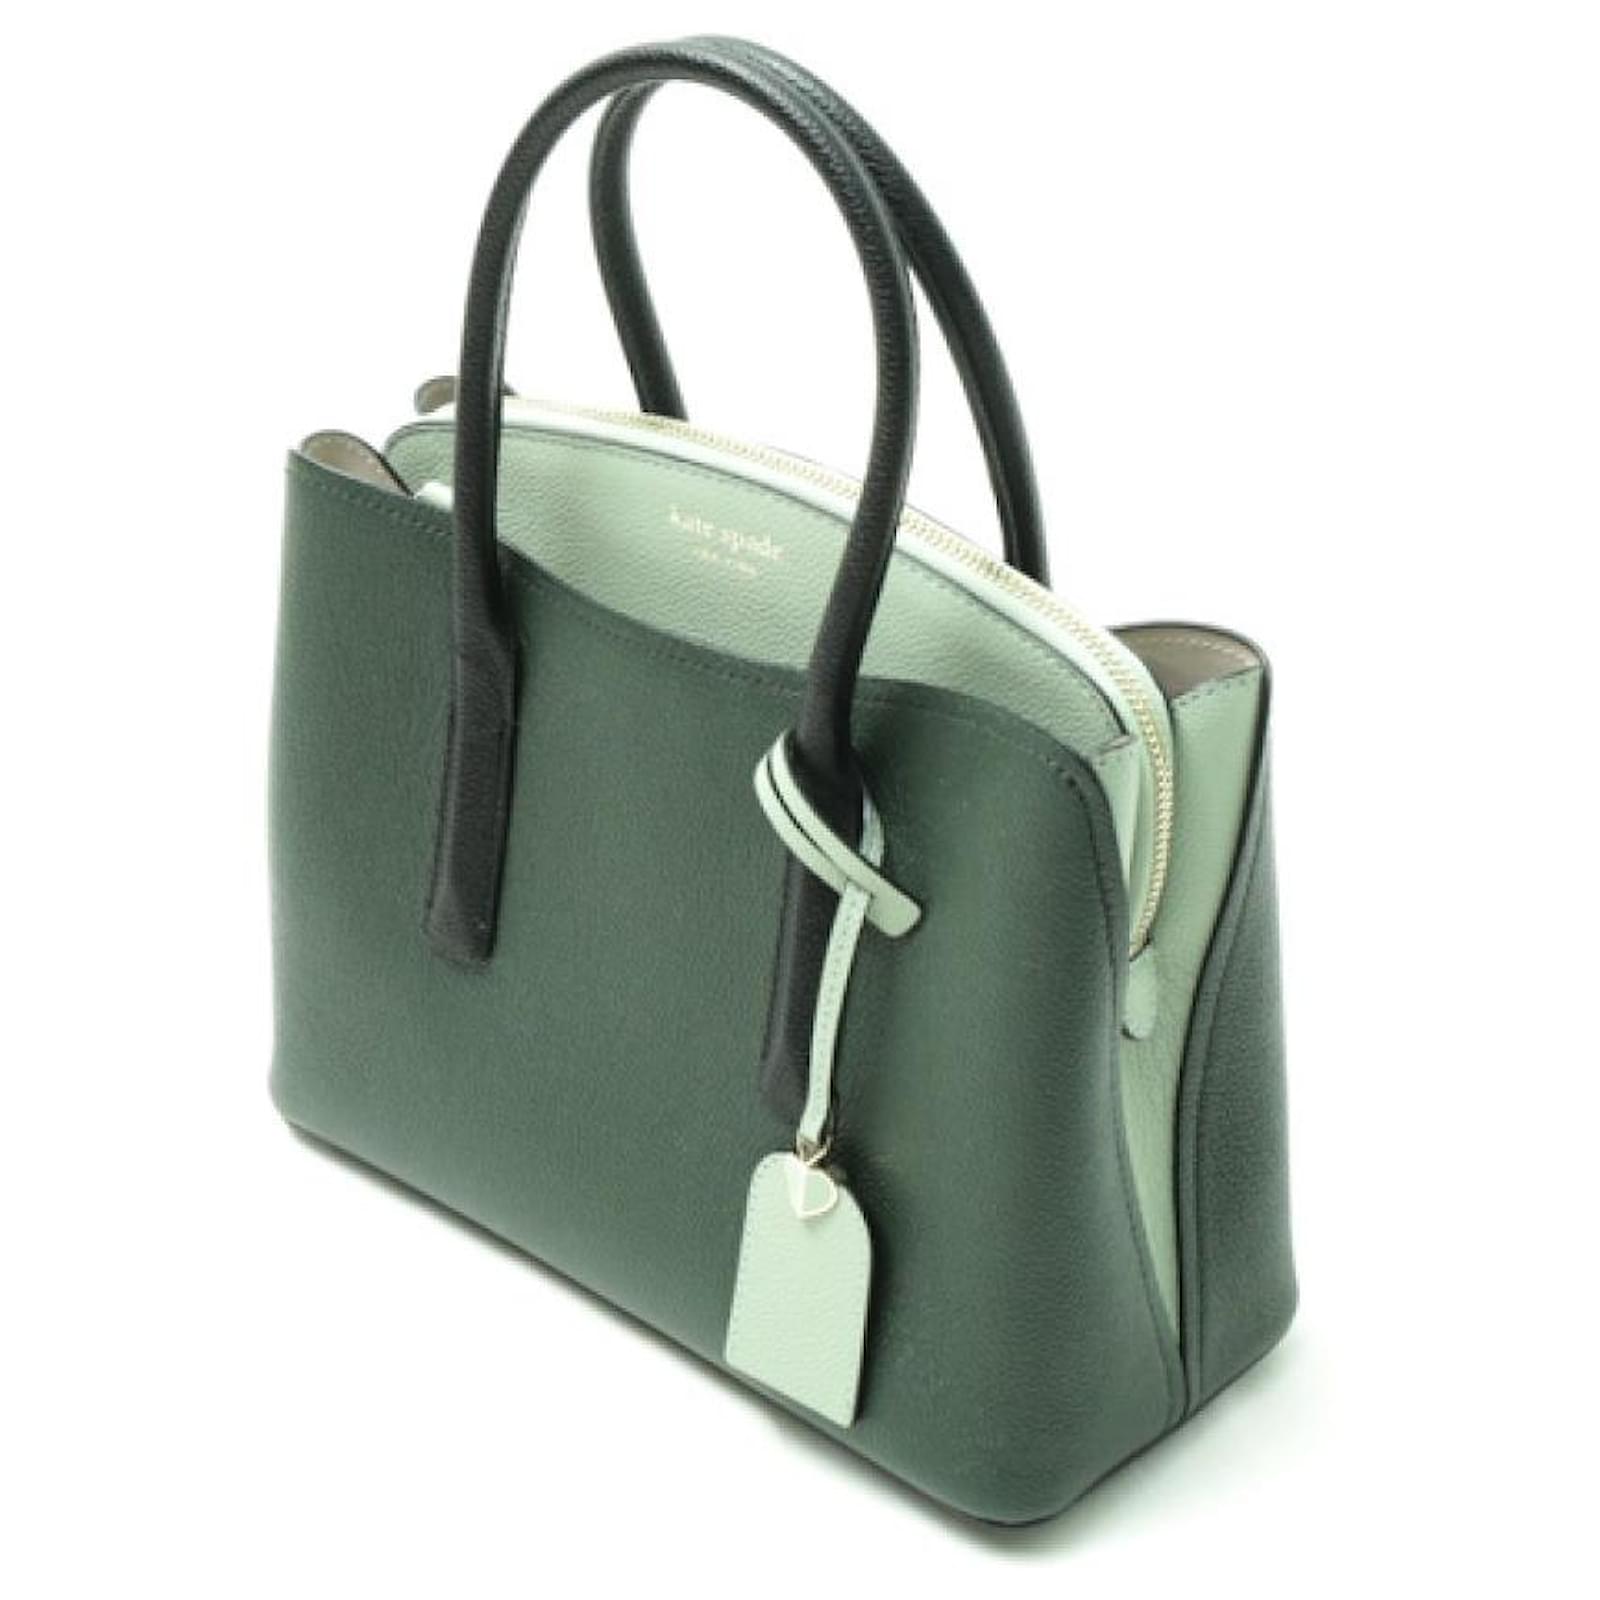 Kate Spade J183 Used Black Leather Handbag Purse | eBay